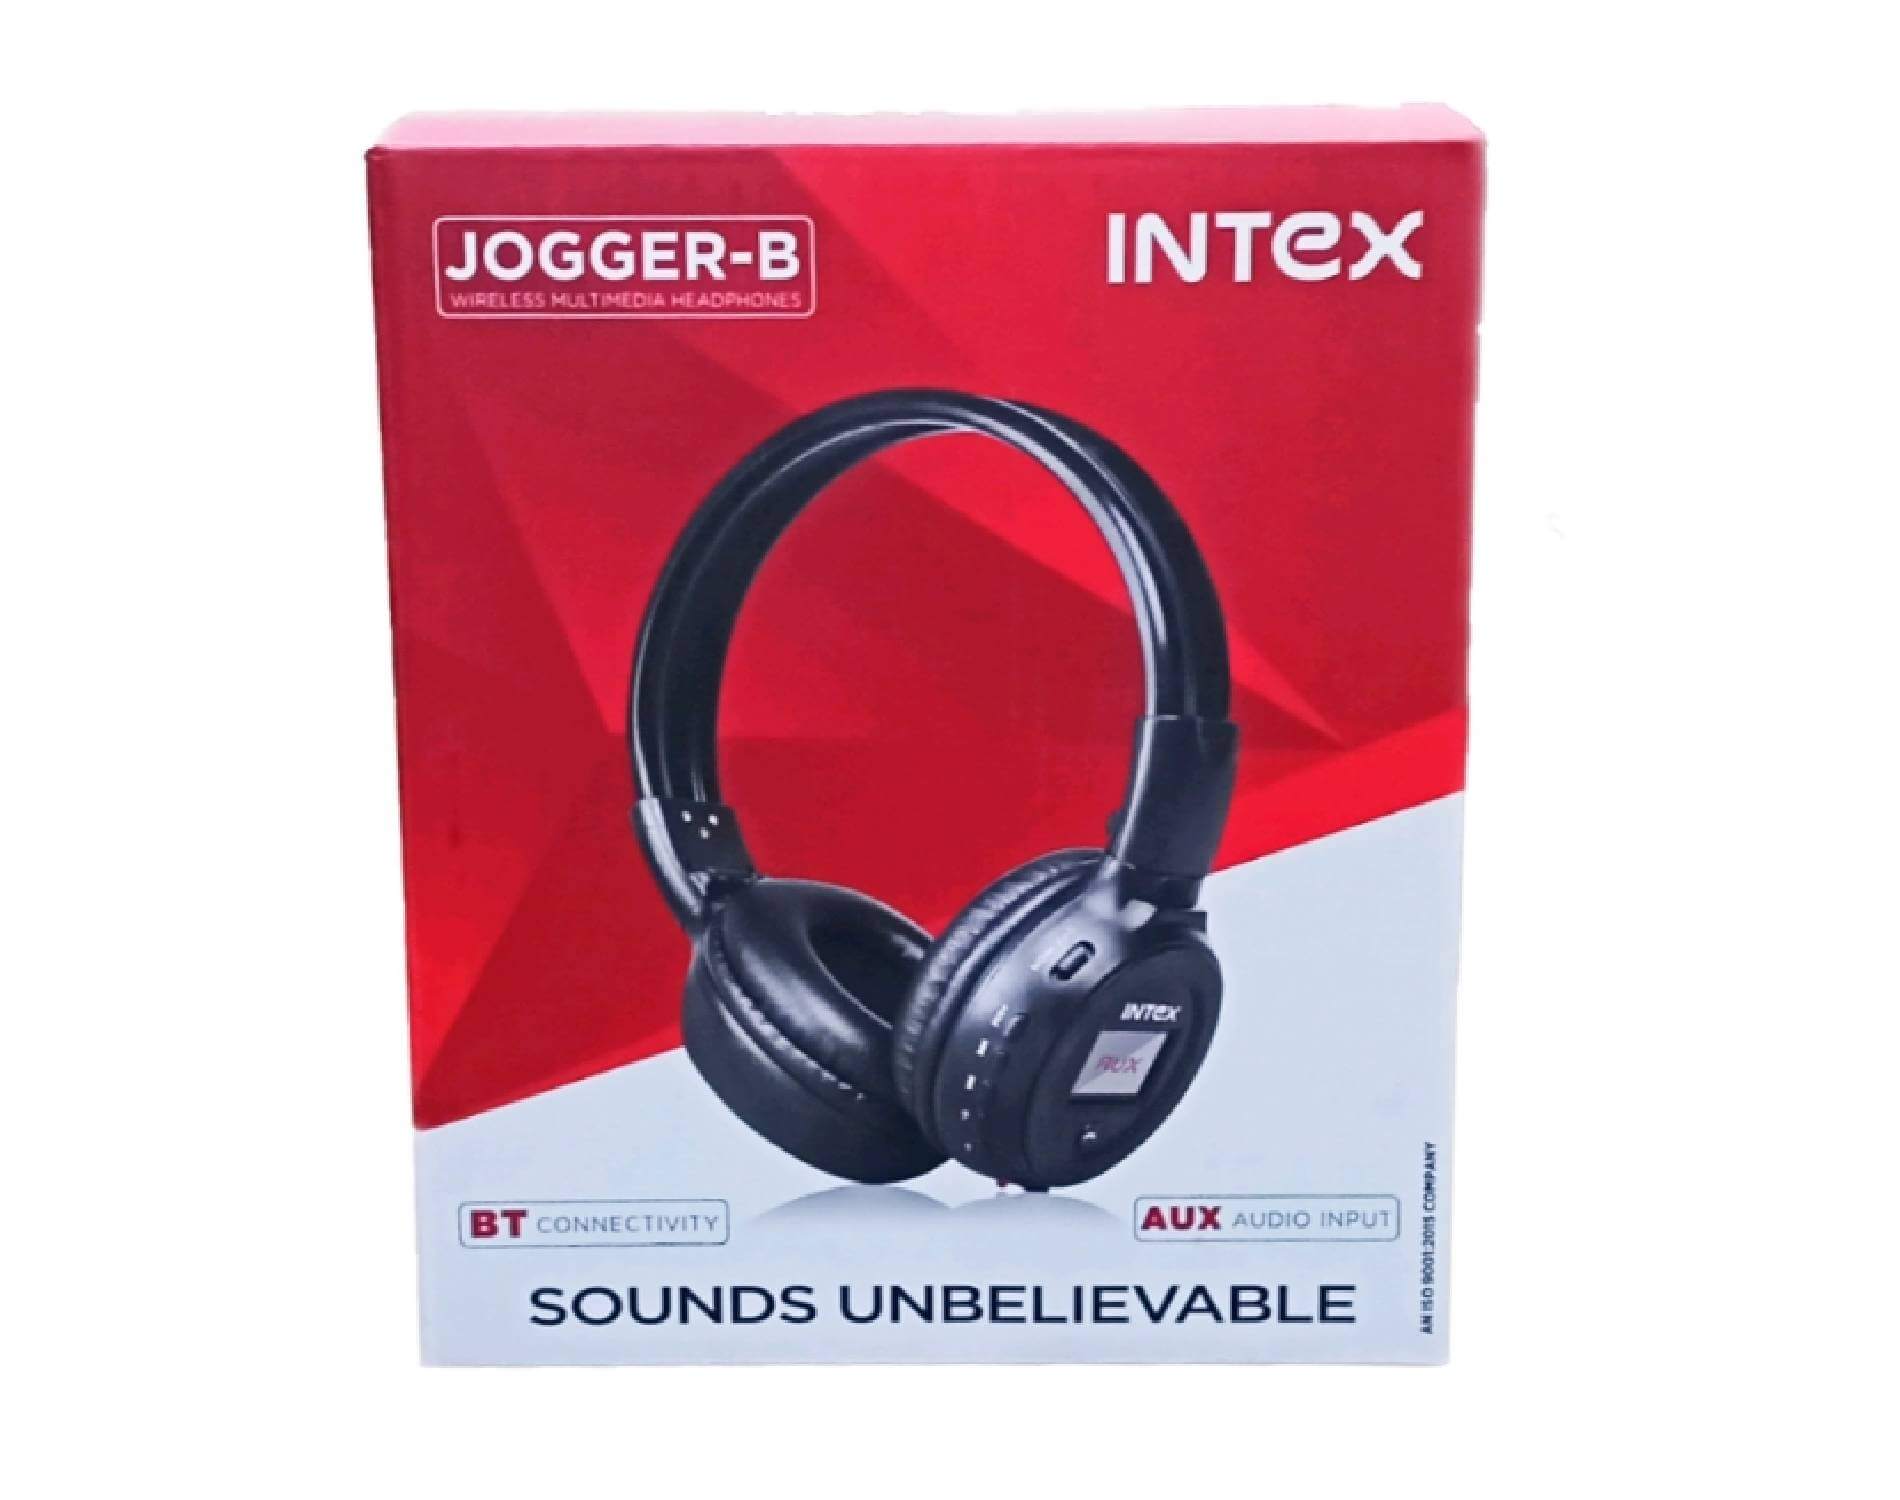 intex jogger headphone